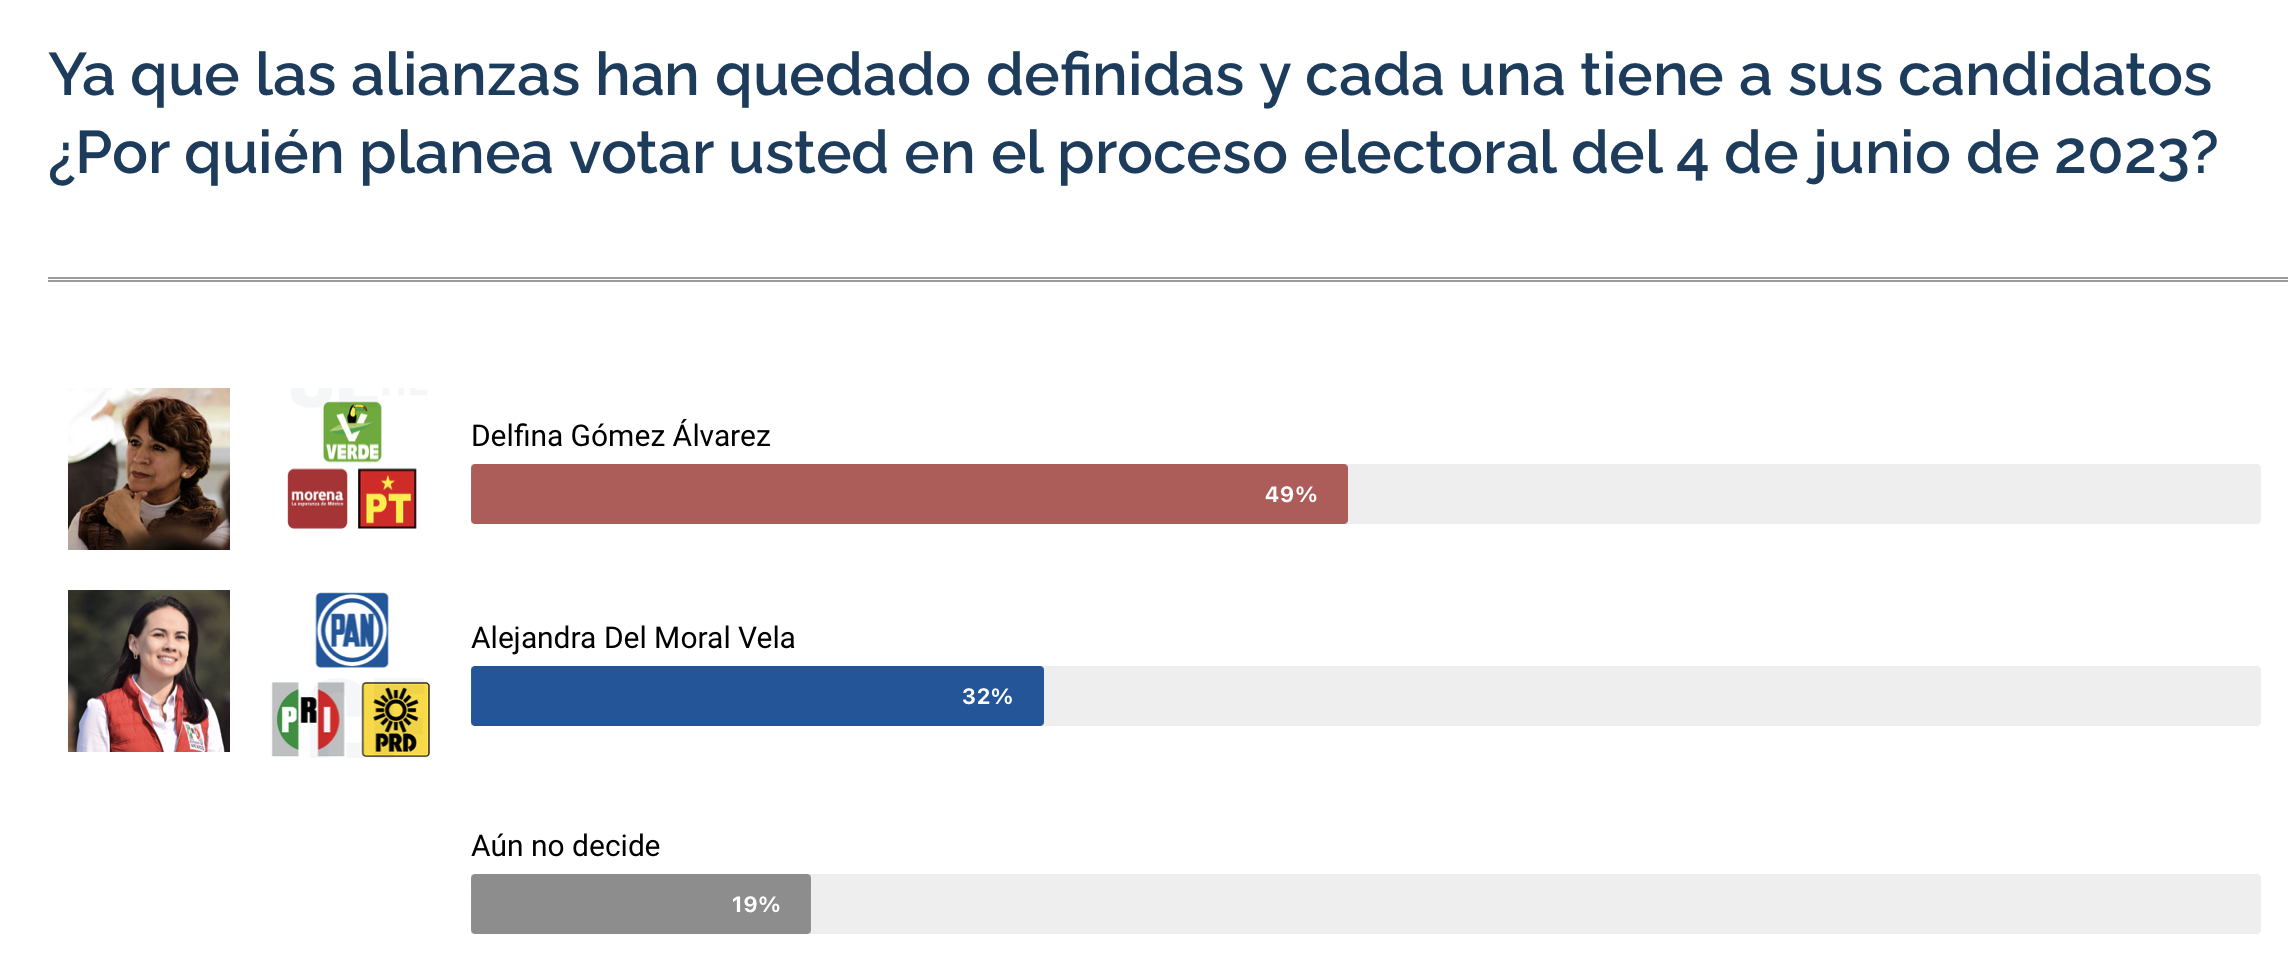 Alejandra Del Moral tiene una diferencia de 17% con Delfina Gómez.